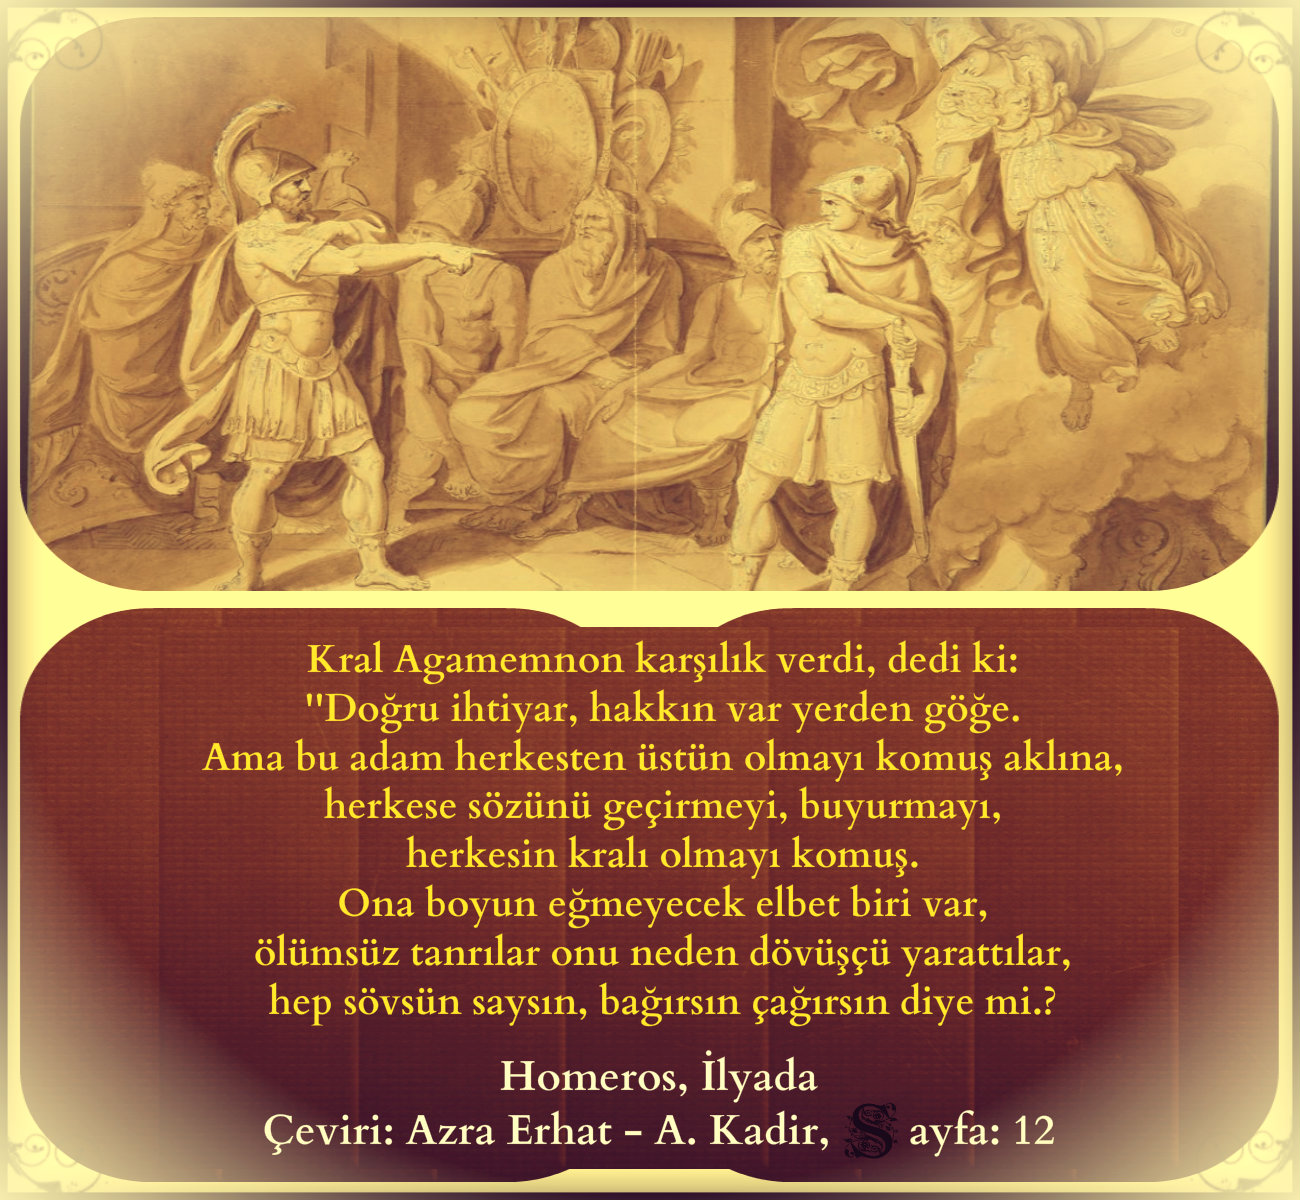 Kral Agamemnon karşılık verdi, dedi ki. herkese sözünü geçirmeyi, buyurmayı...